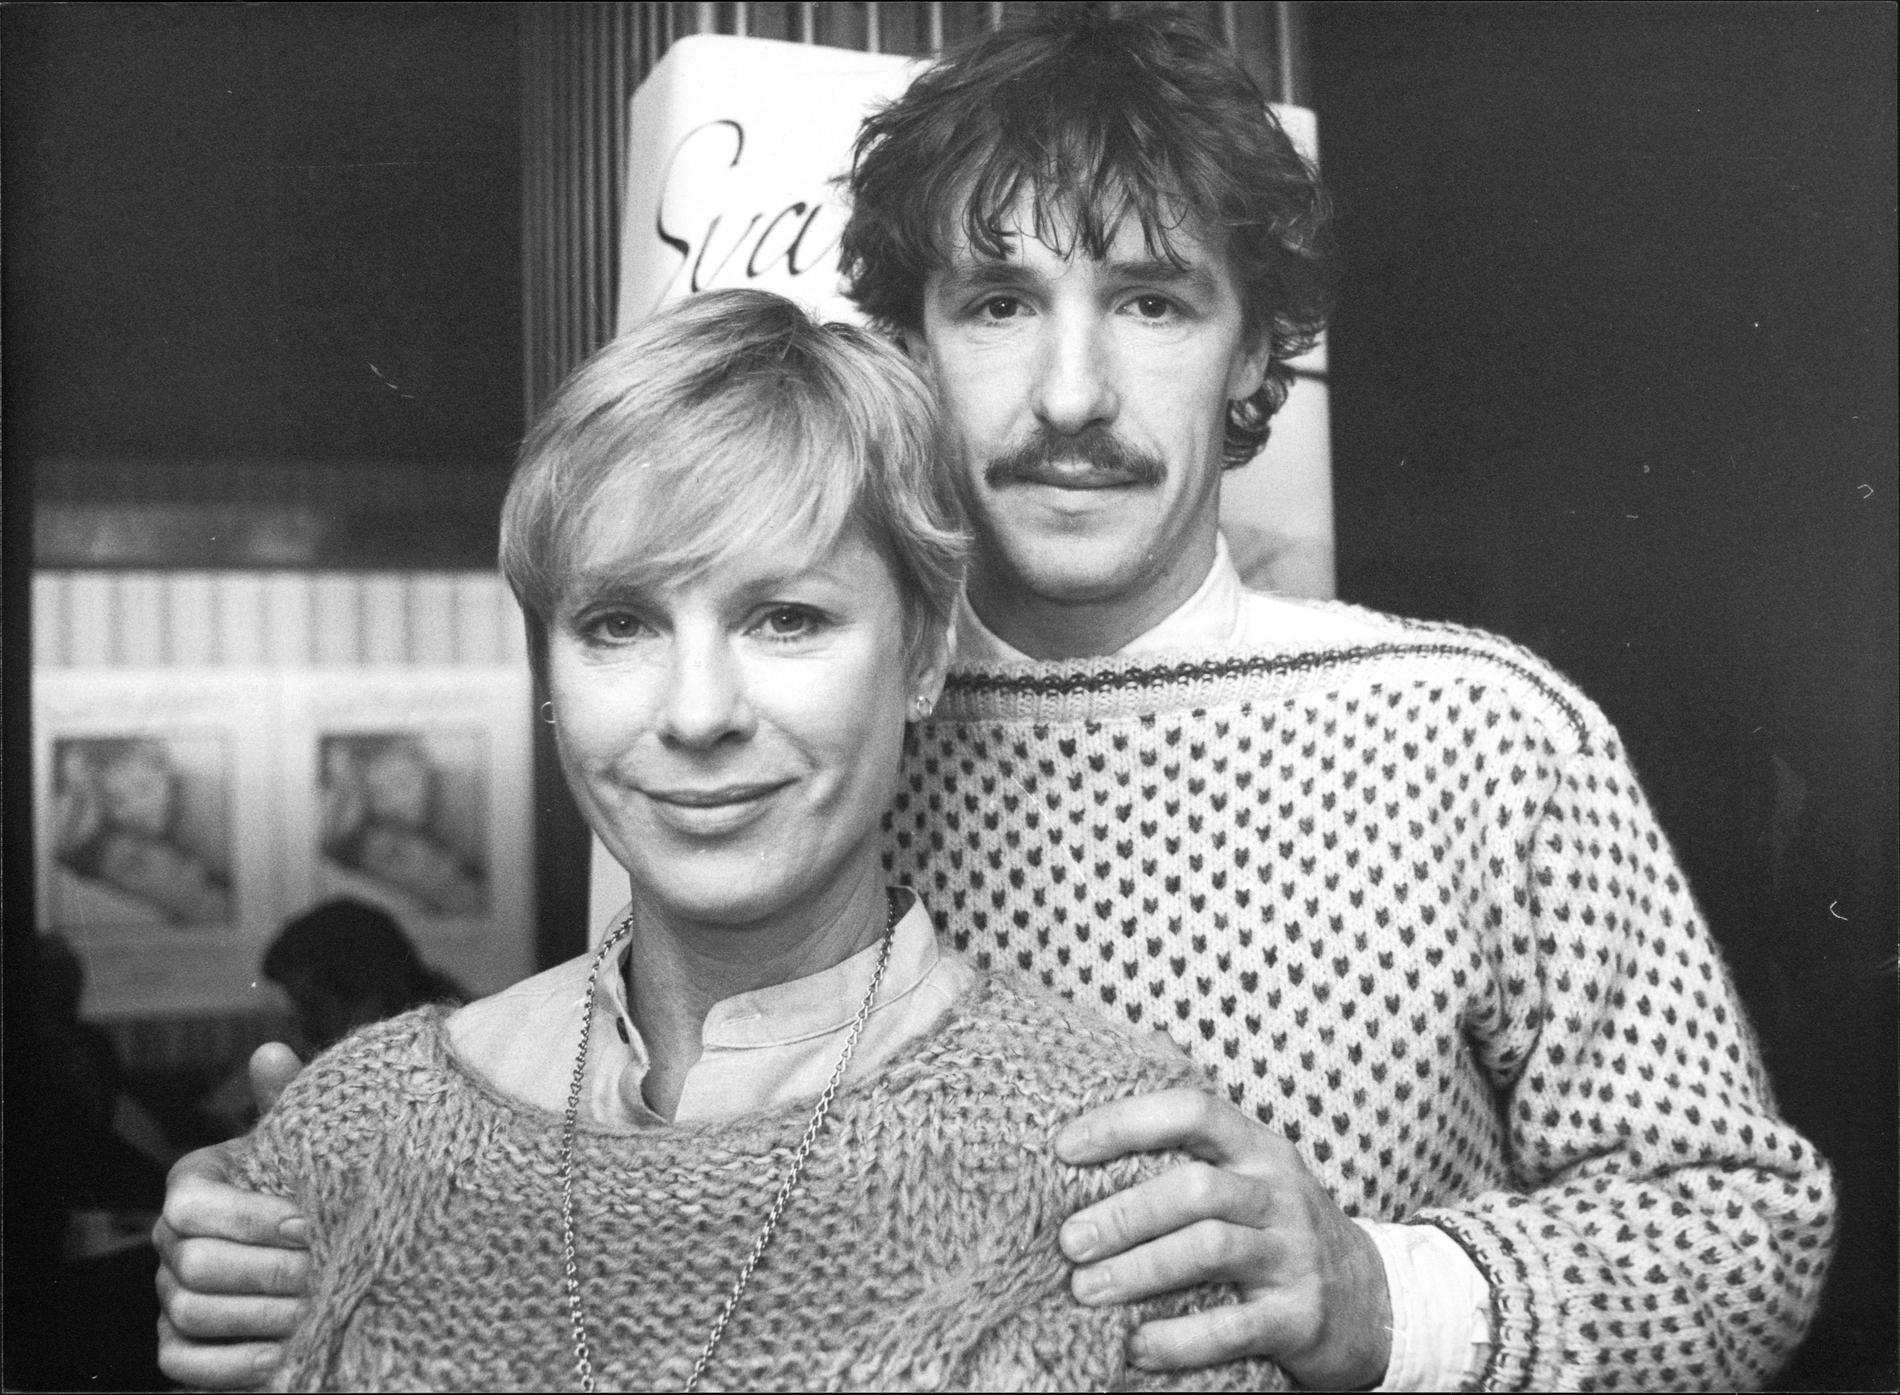 Björn Skagestad och Bibi Andersson under en presskonferens på biografen Saga, inför premiären av den norsk-svenska filmen ”Svarta fåglar” 1983.